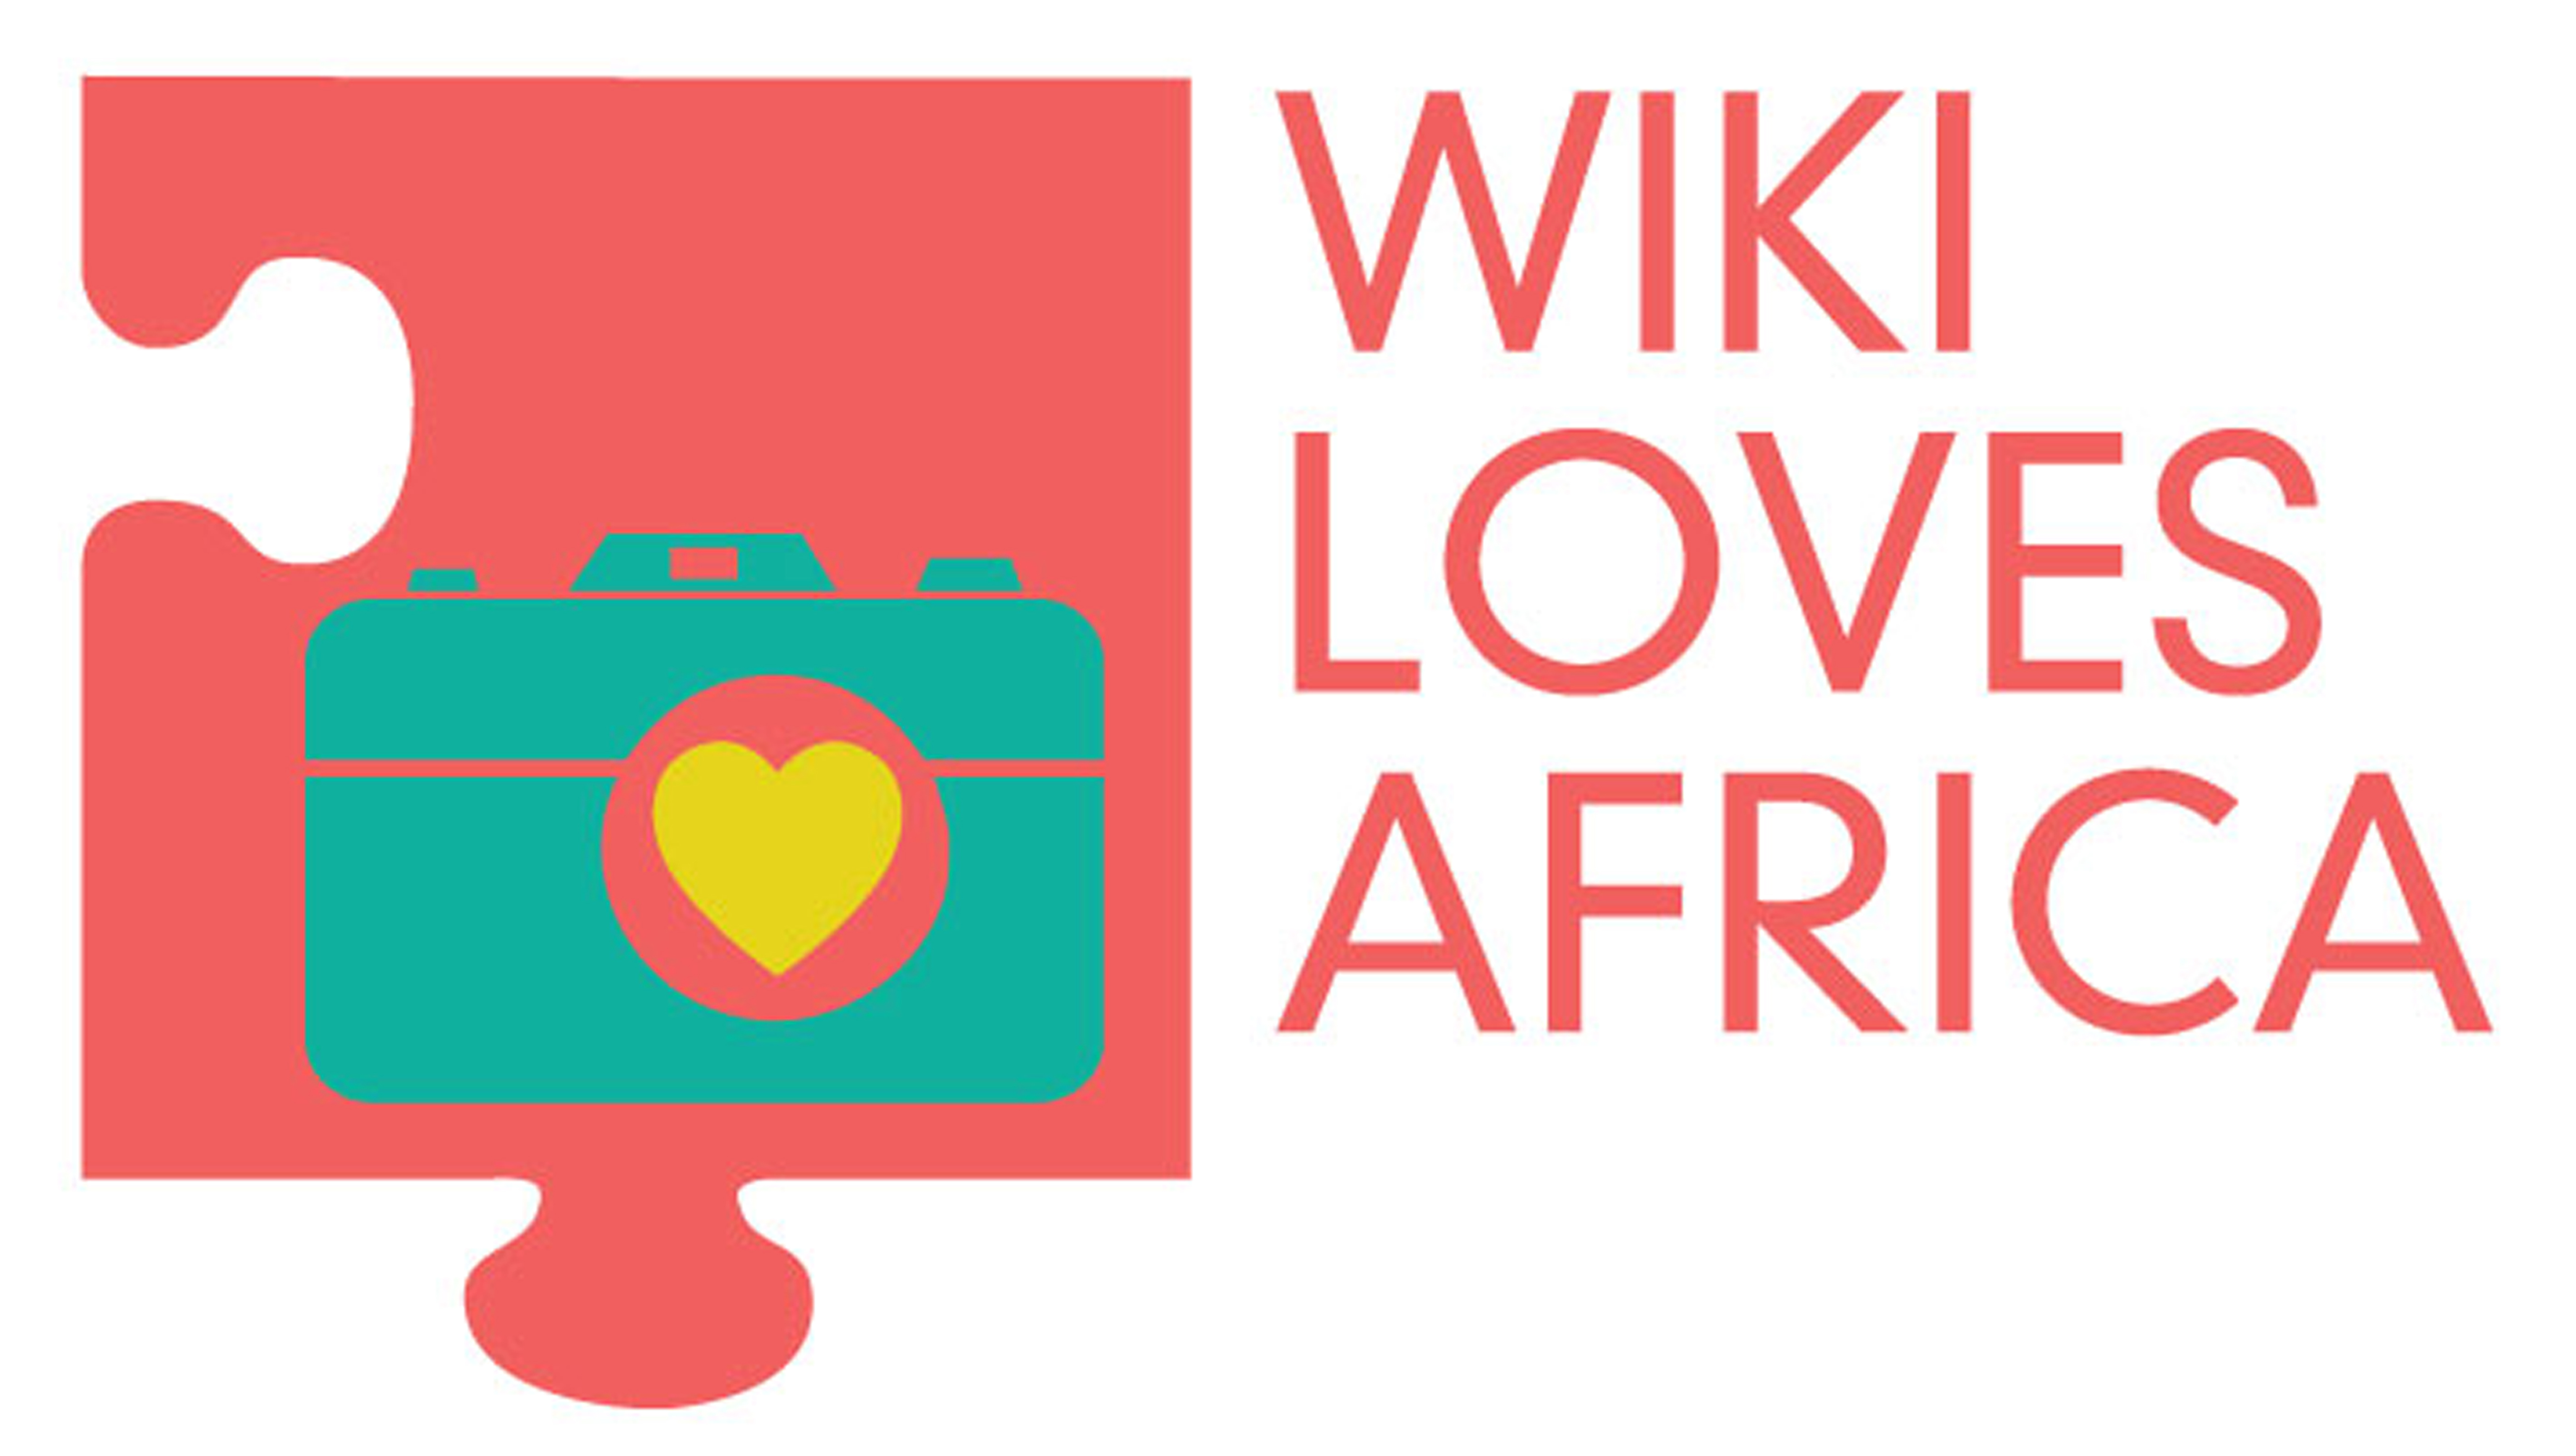 Fi & Hi Africa 2022 логотип. I Love Africa. Barancira. Вики лове